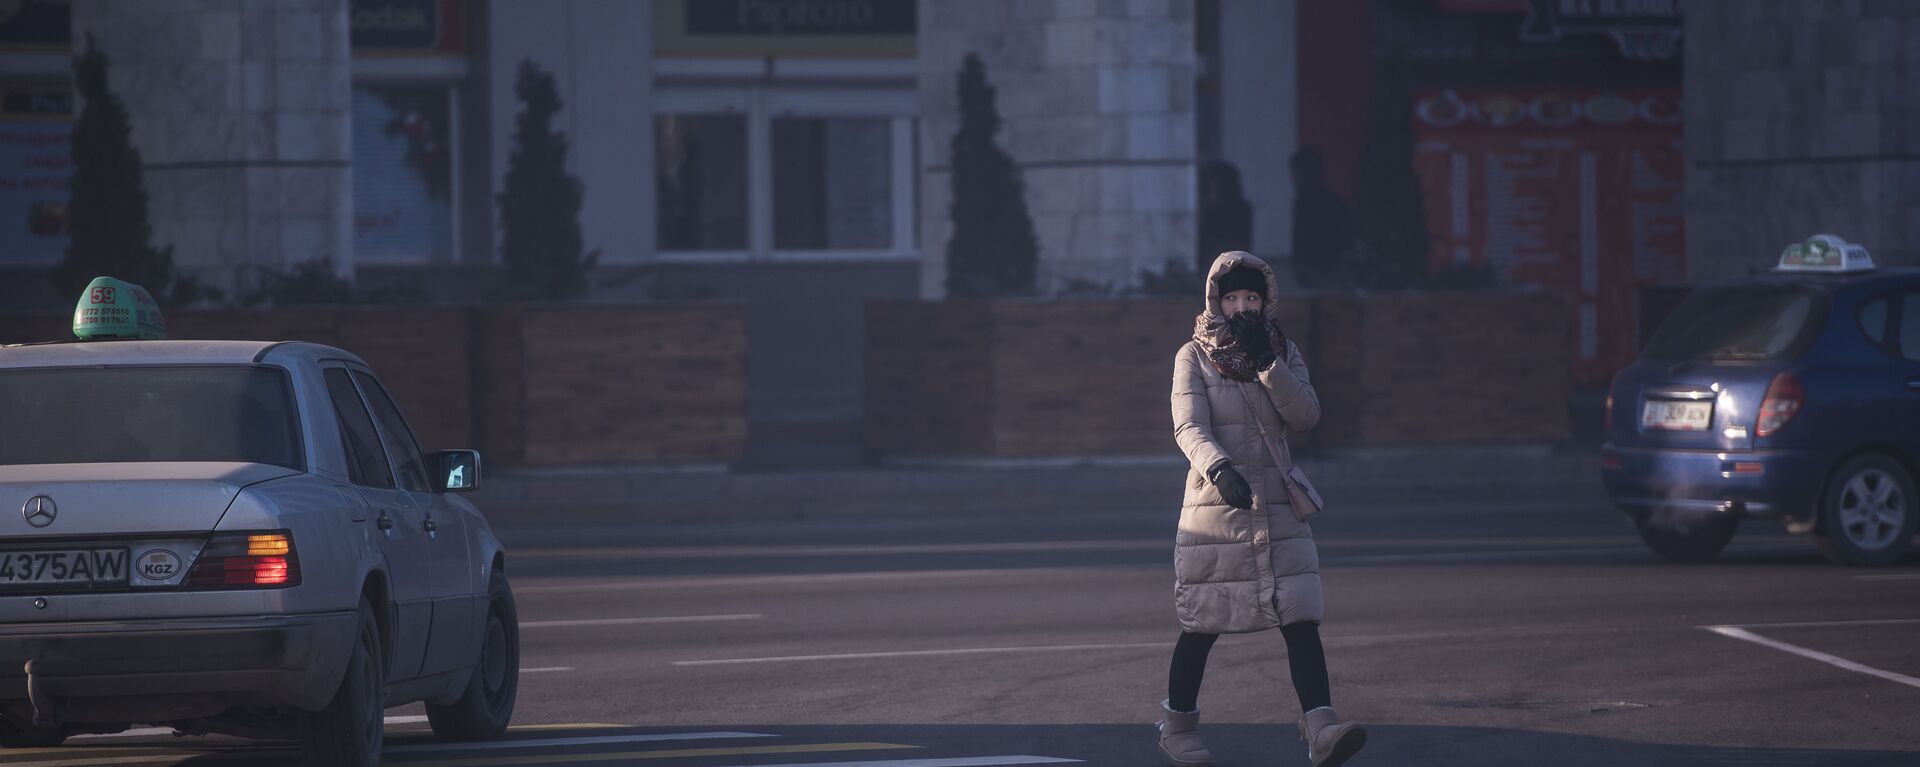 Девушка переходит дорогу на одной из улиц Бишкека. Архивное фото - Sputnik Кыргызстан, 1920, 16.12.2020